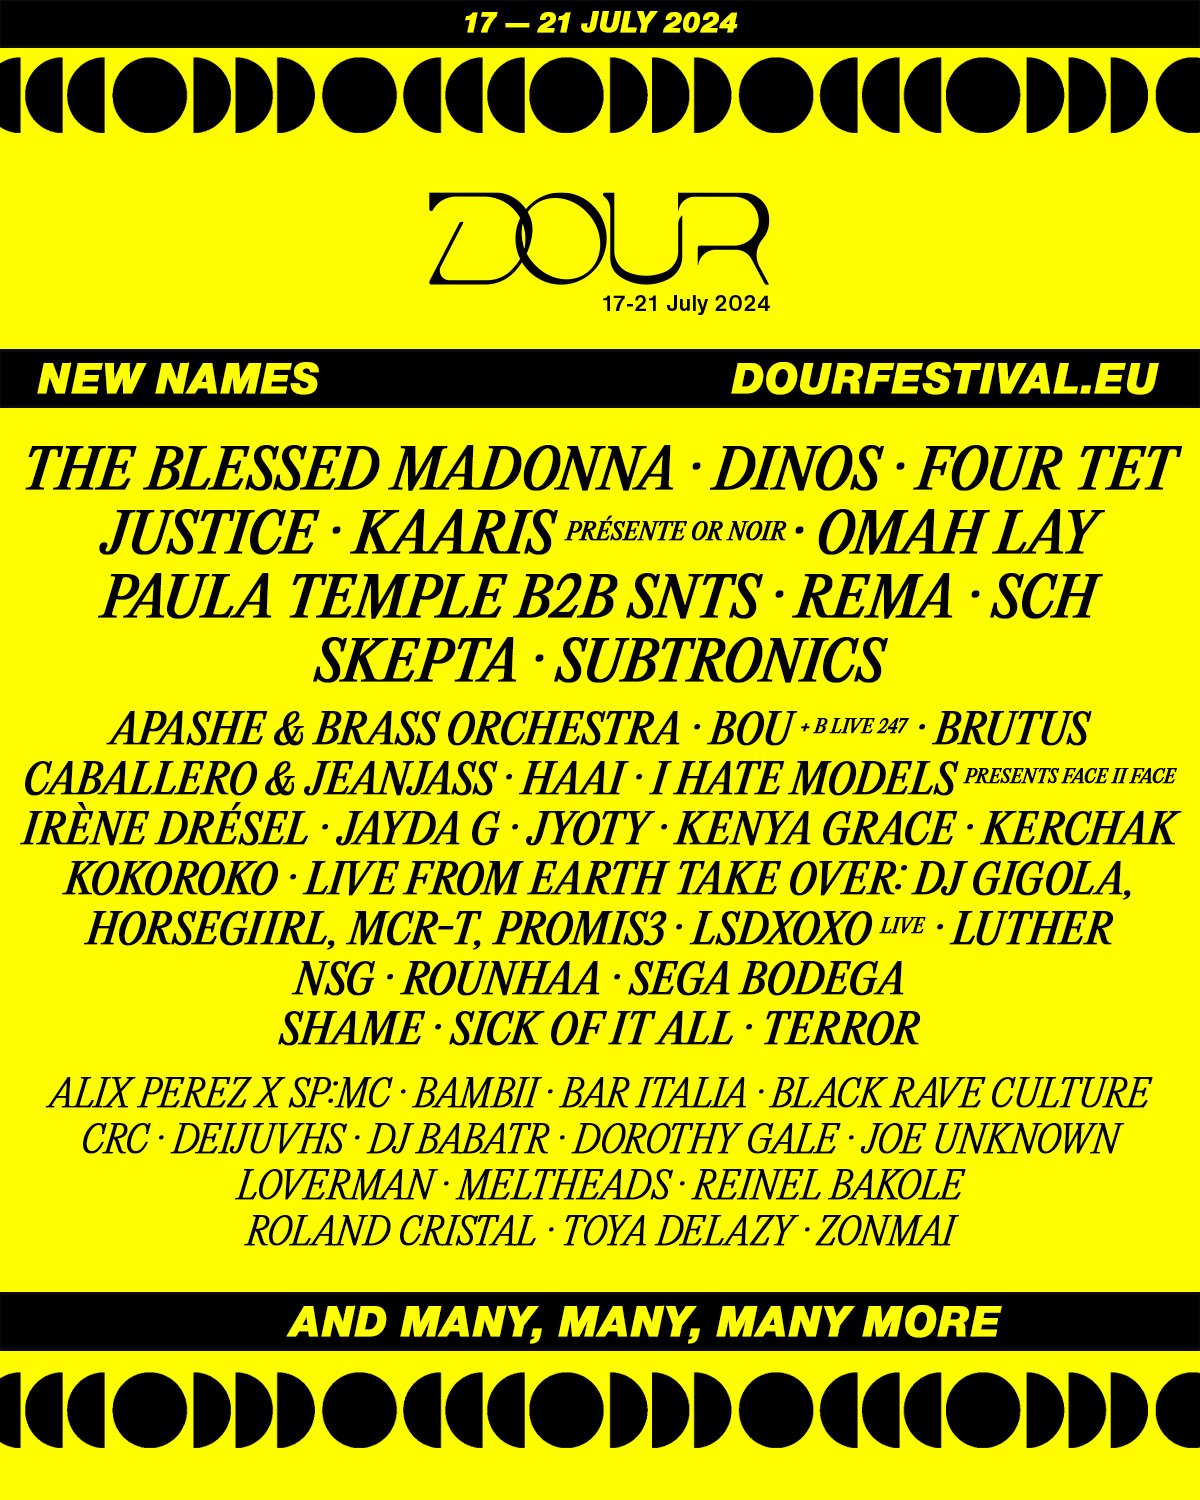 Promo  van Dour Festival 2024, in opdracht van Dour